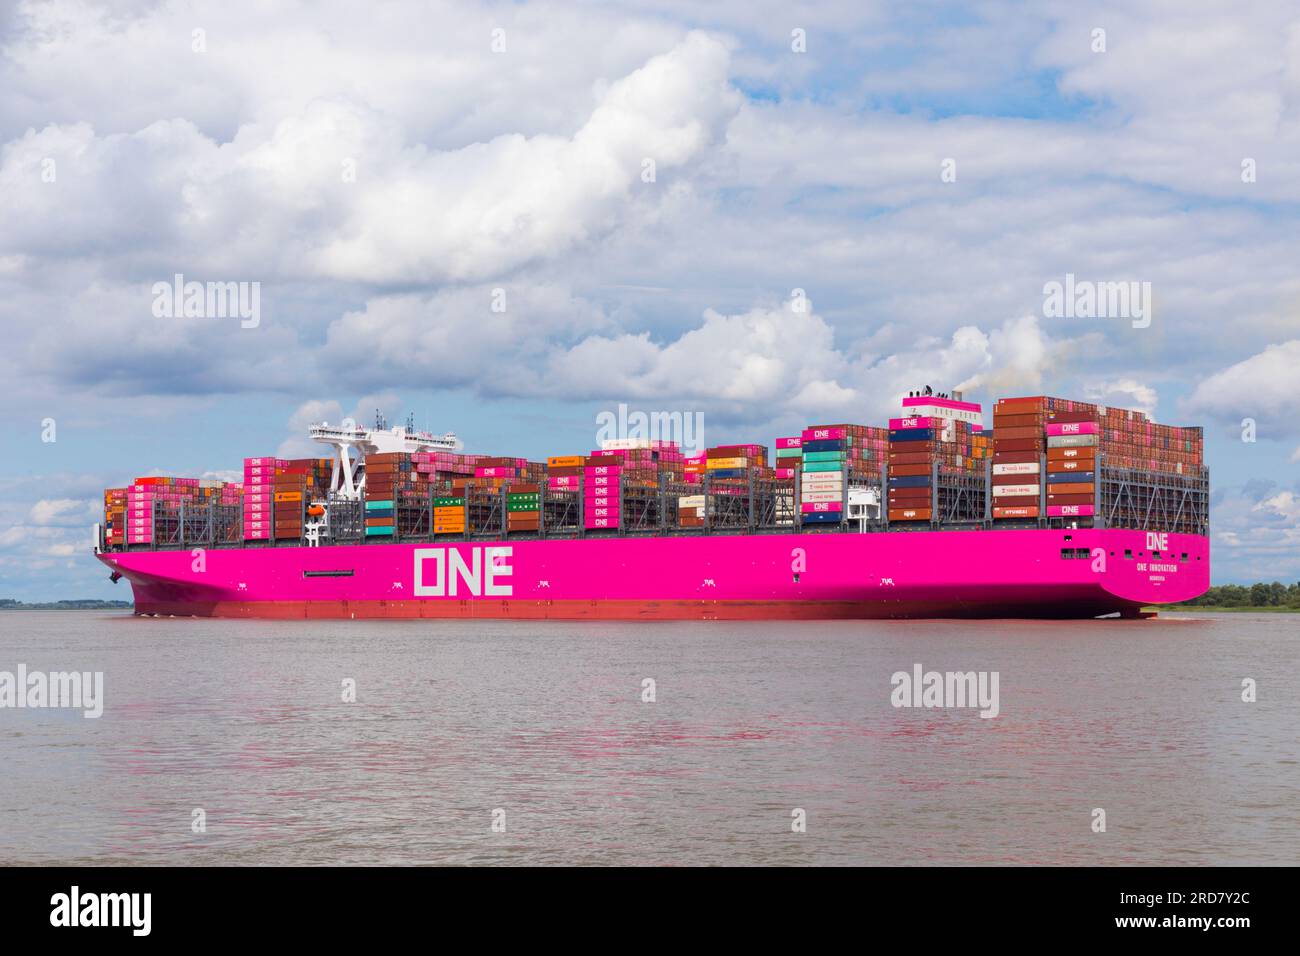 Stade, Deutschland – 18. Juli 2023: ONE Innovation, der neueste und größte Zuwachs der Containerschiffflotte von Ocean Network Express Pte. Ltd Stockfoto